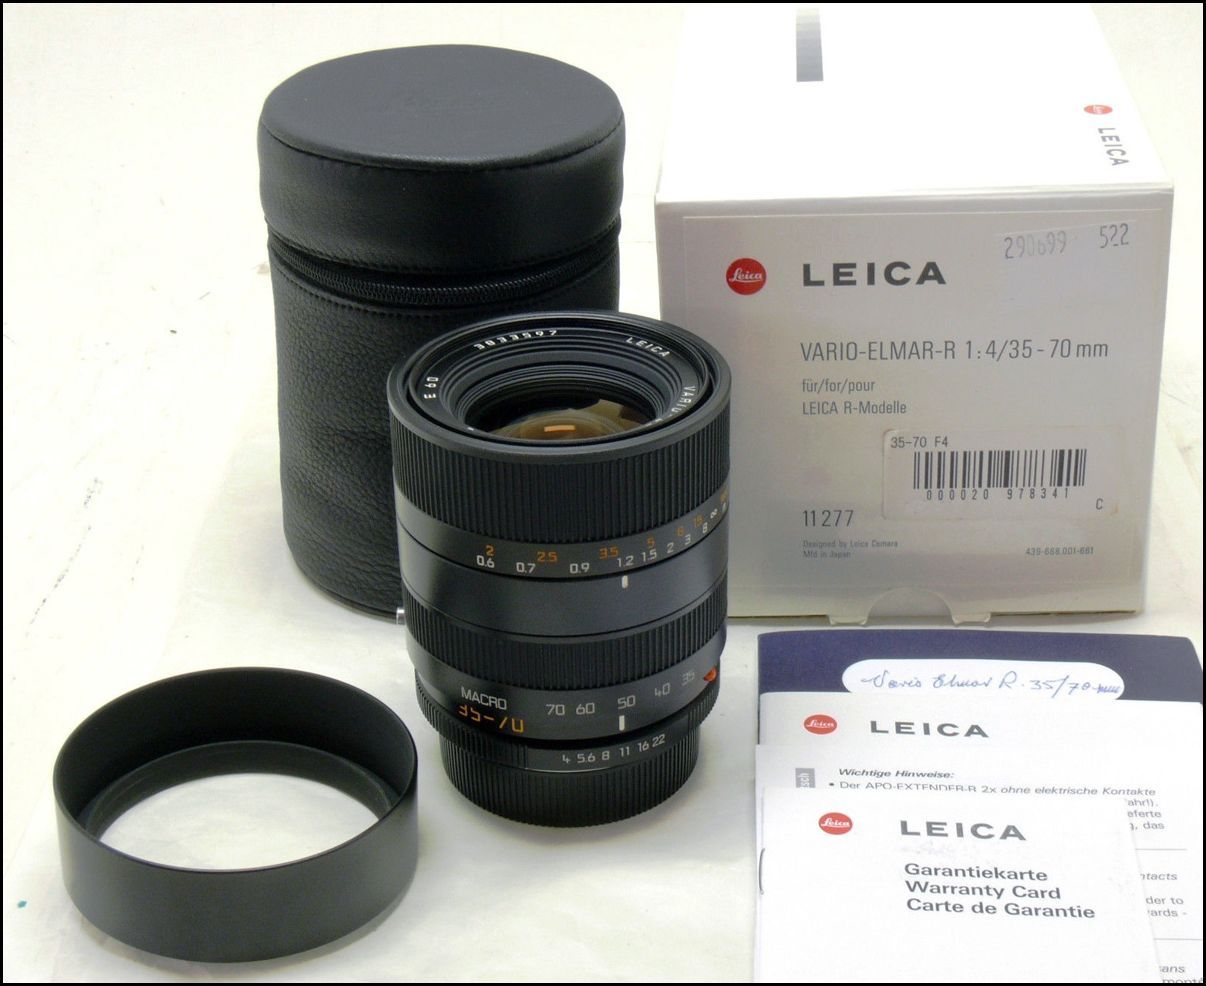 徕卡 Leica R 35-70/4 VARIO-ELMAR-R MACRO ROM 带包装